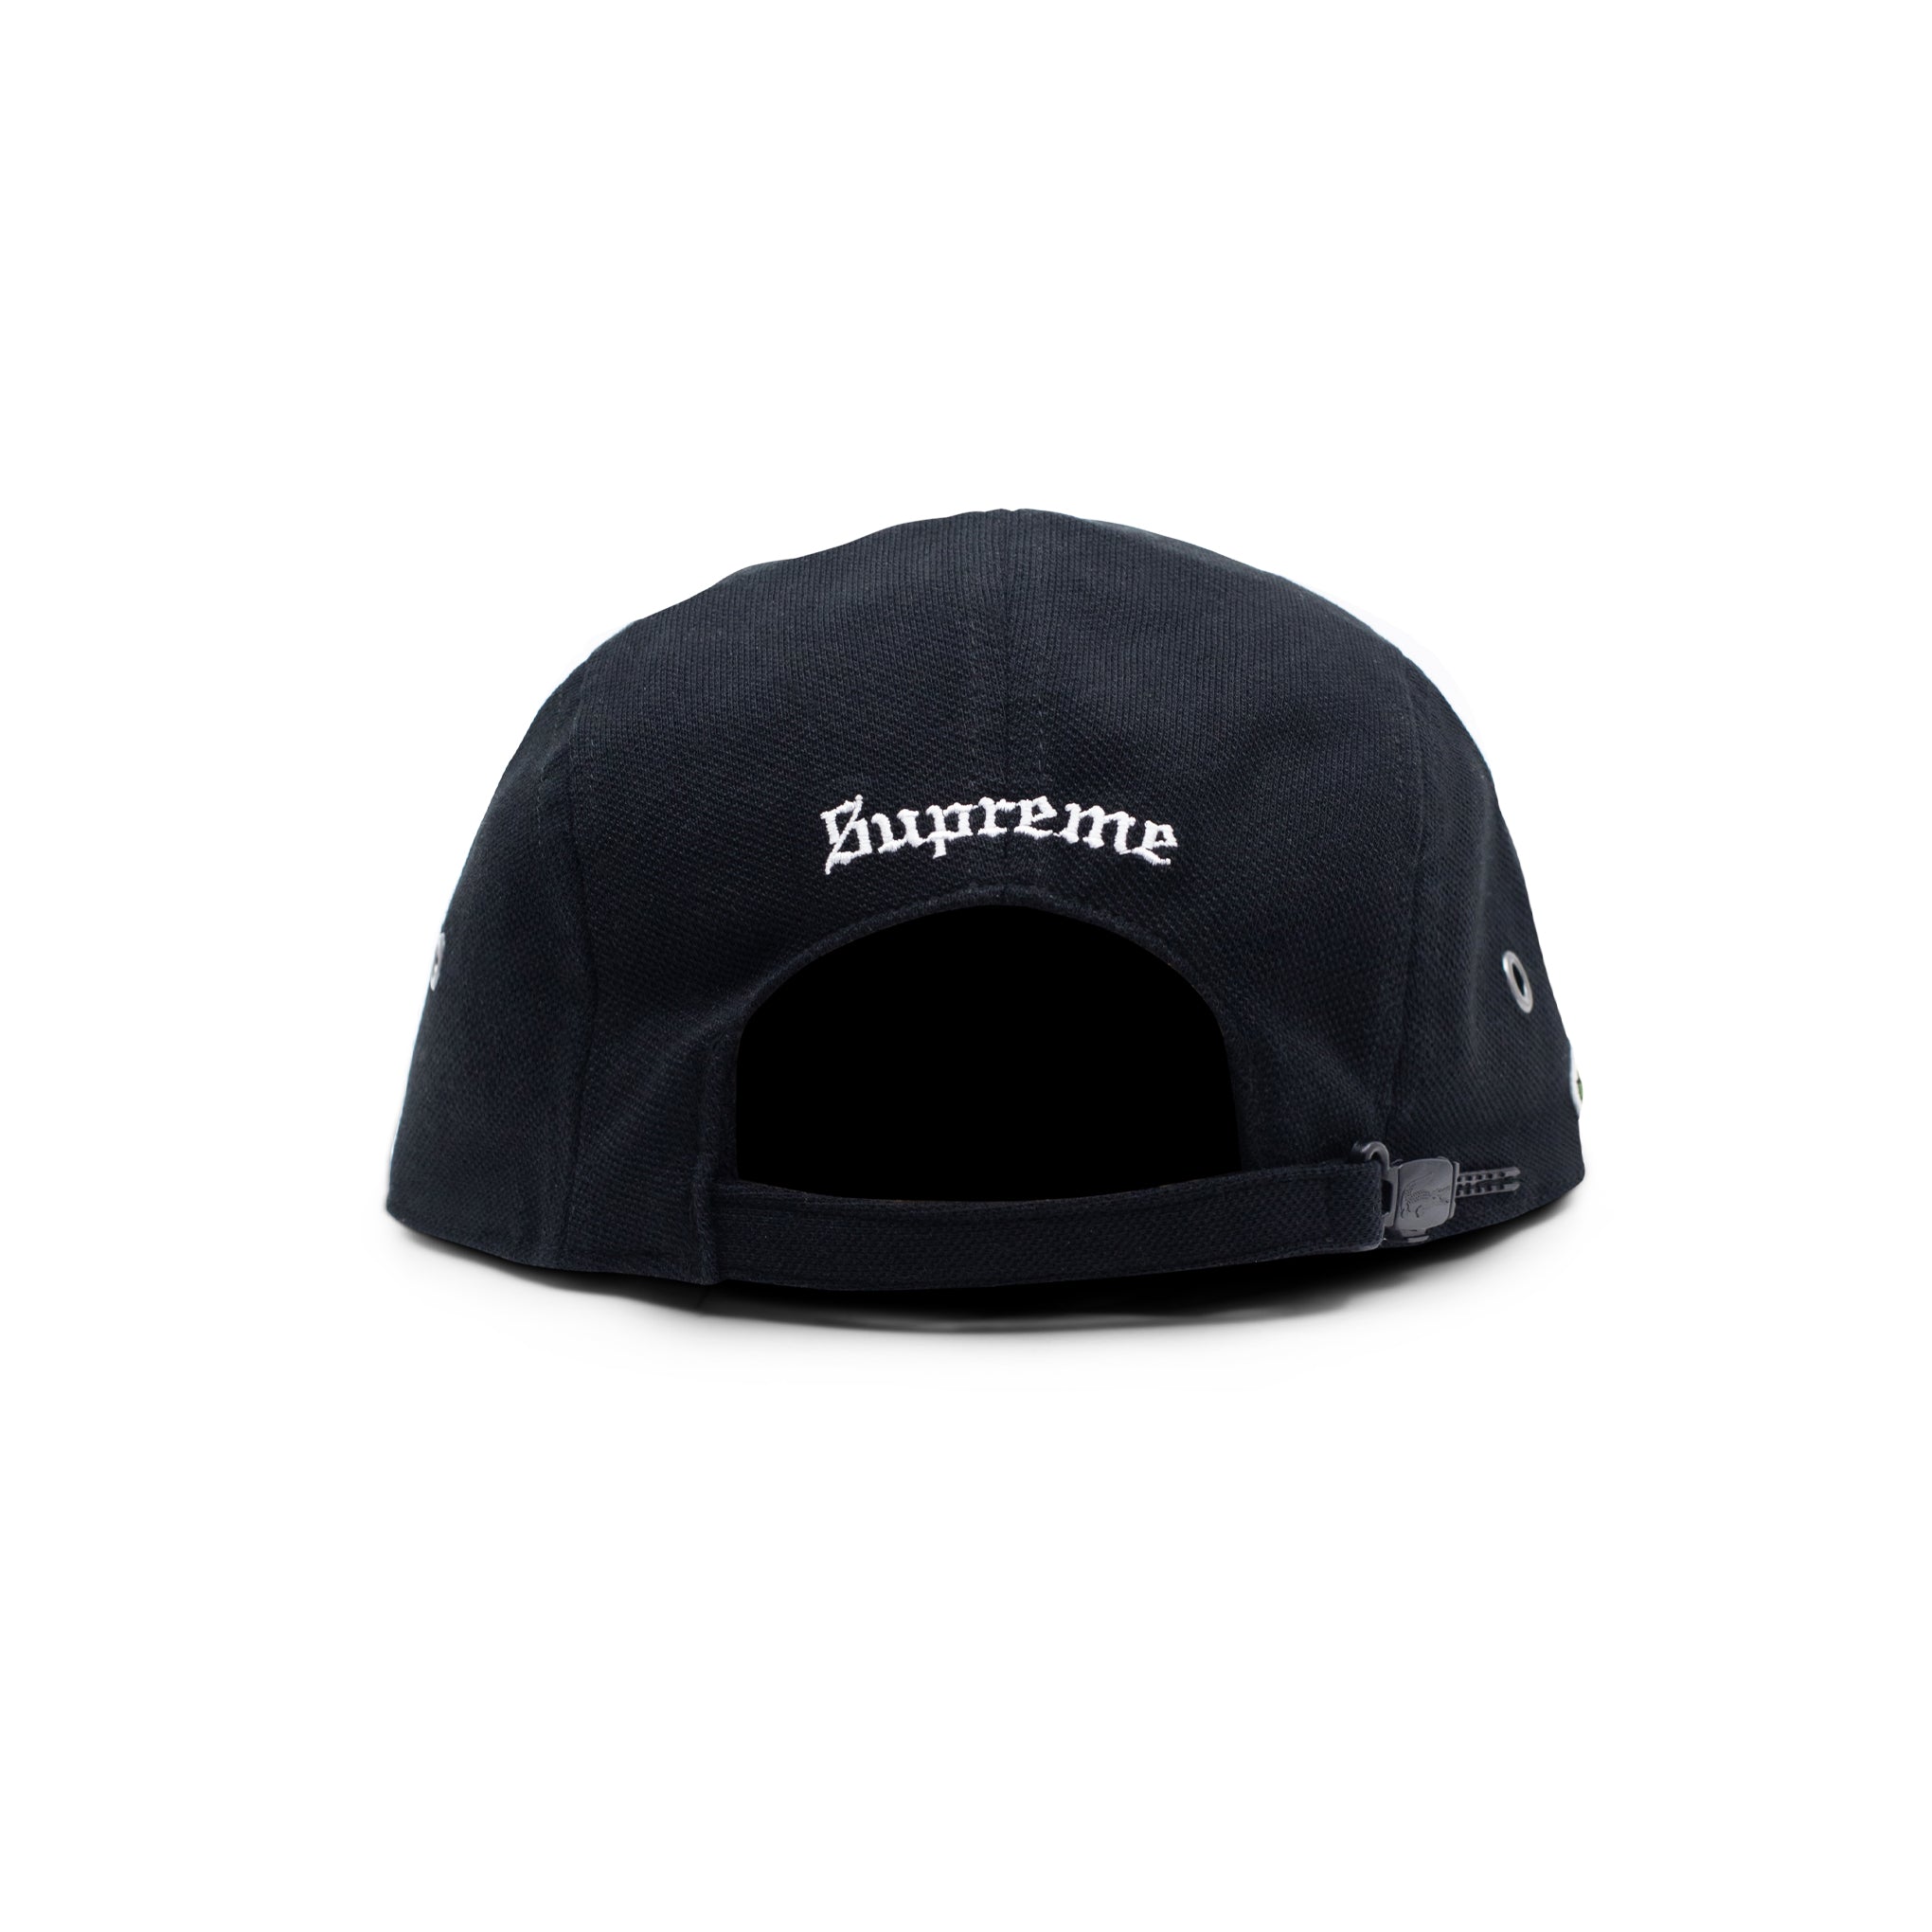 SUPREME LACOSTE PIQUE KNIT CAMP CAP BLACK